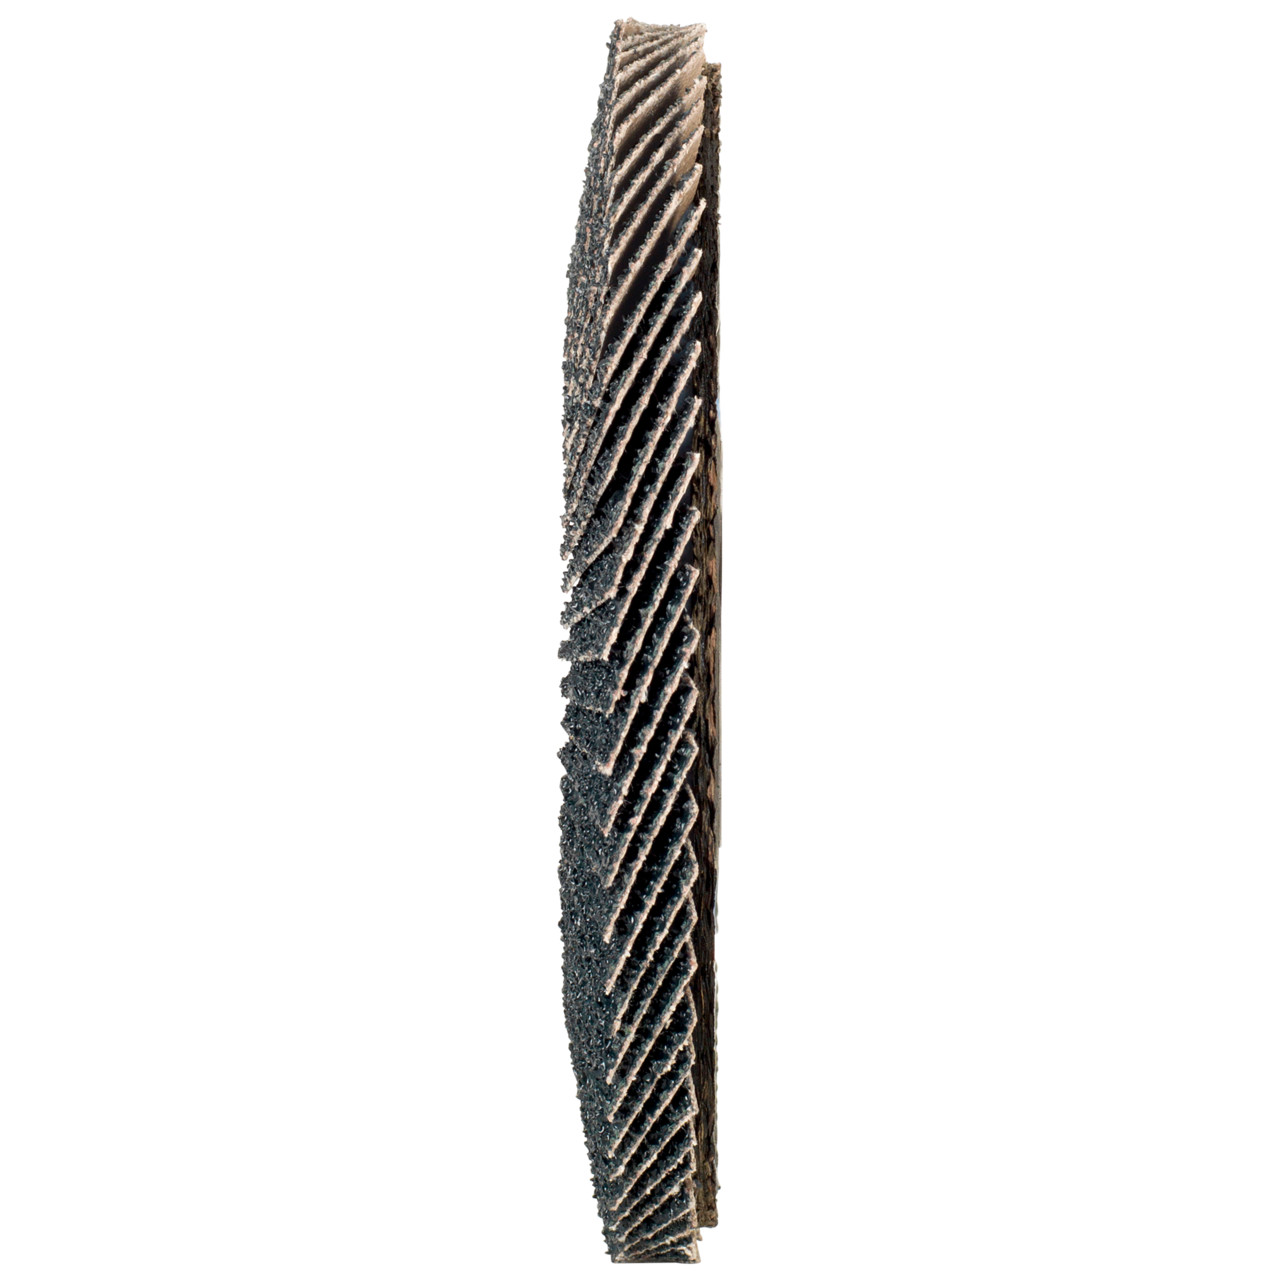 Tyrolit Arandela de seguridad dentada DxH 115x22,2 2en1 para acero y acero inoxidable, P40, forma: 27A - versión desplazada (versión con cuerpo de soporte de fibra de vidrio), Art. 668642